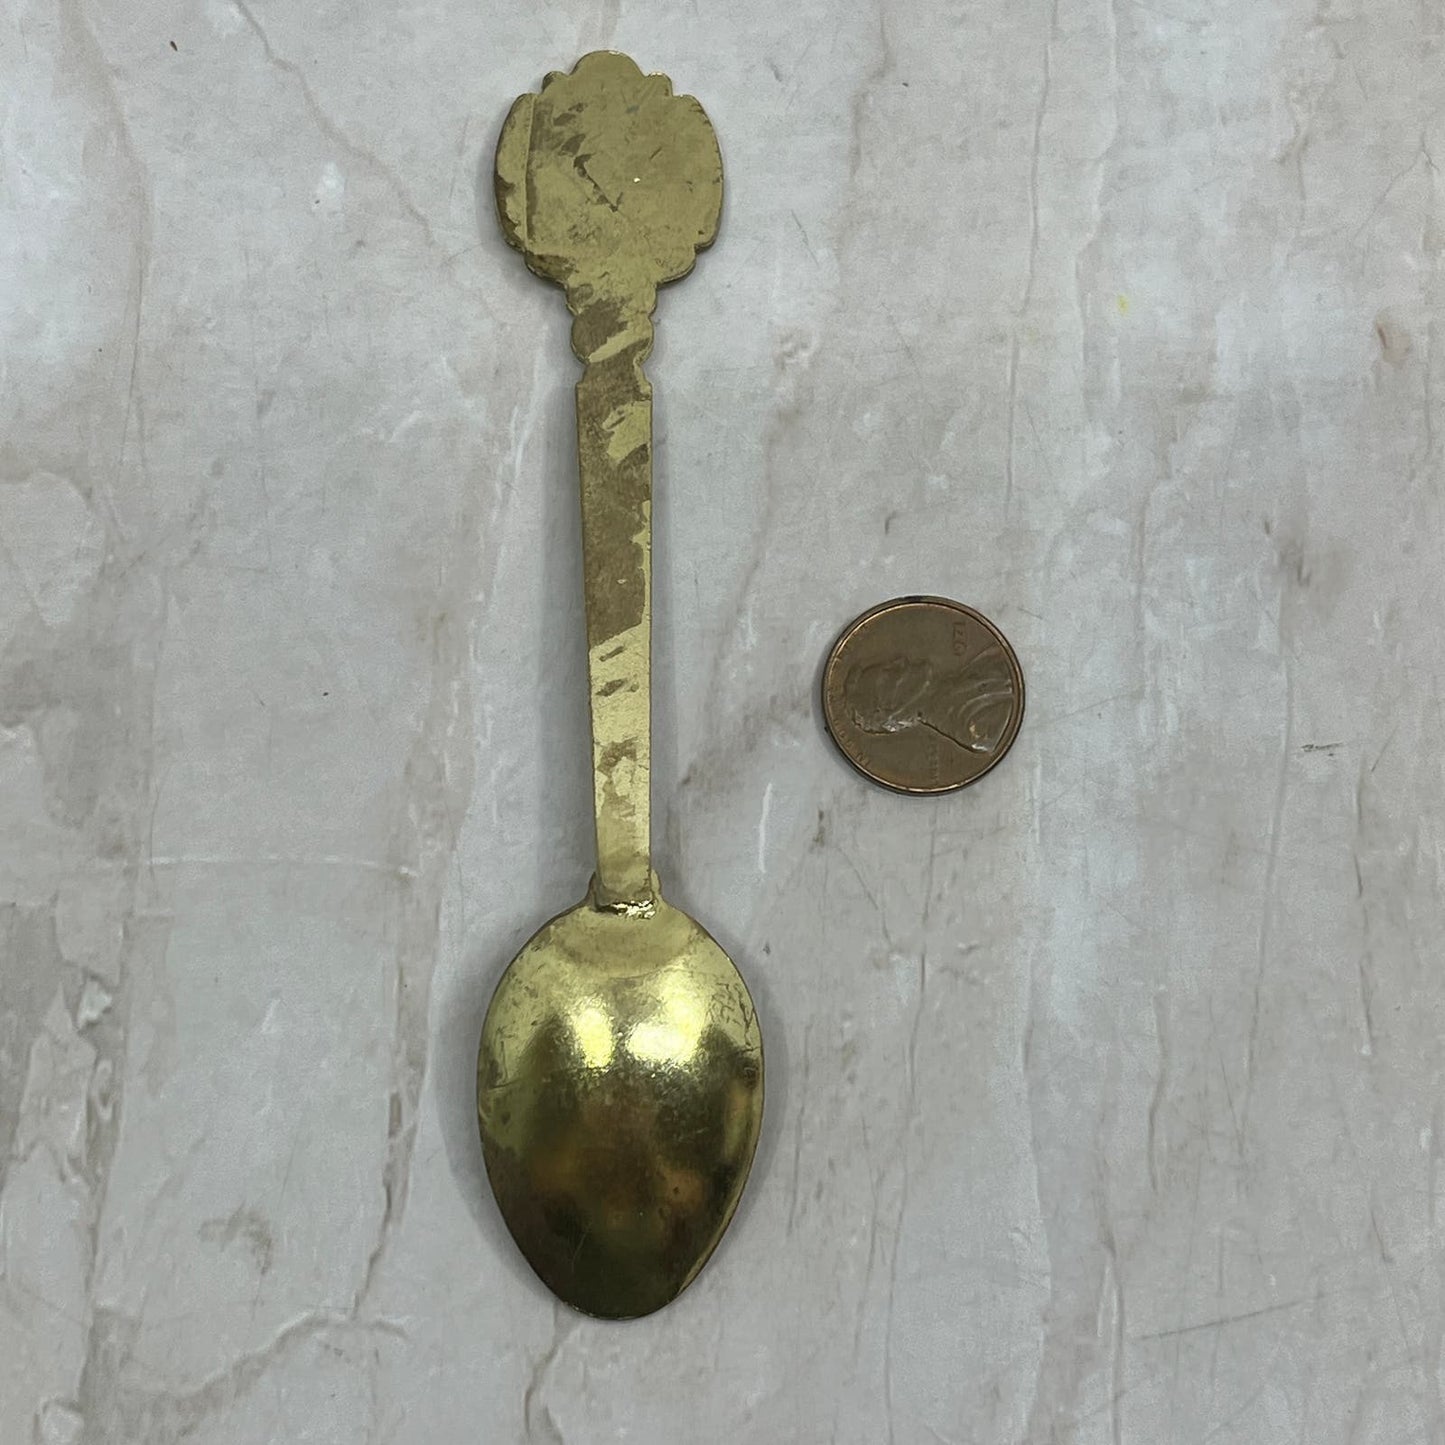 Vintage Cloisonne Gold Tone Hong Kong Souvenir Spoon TG9-SP